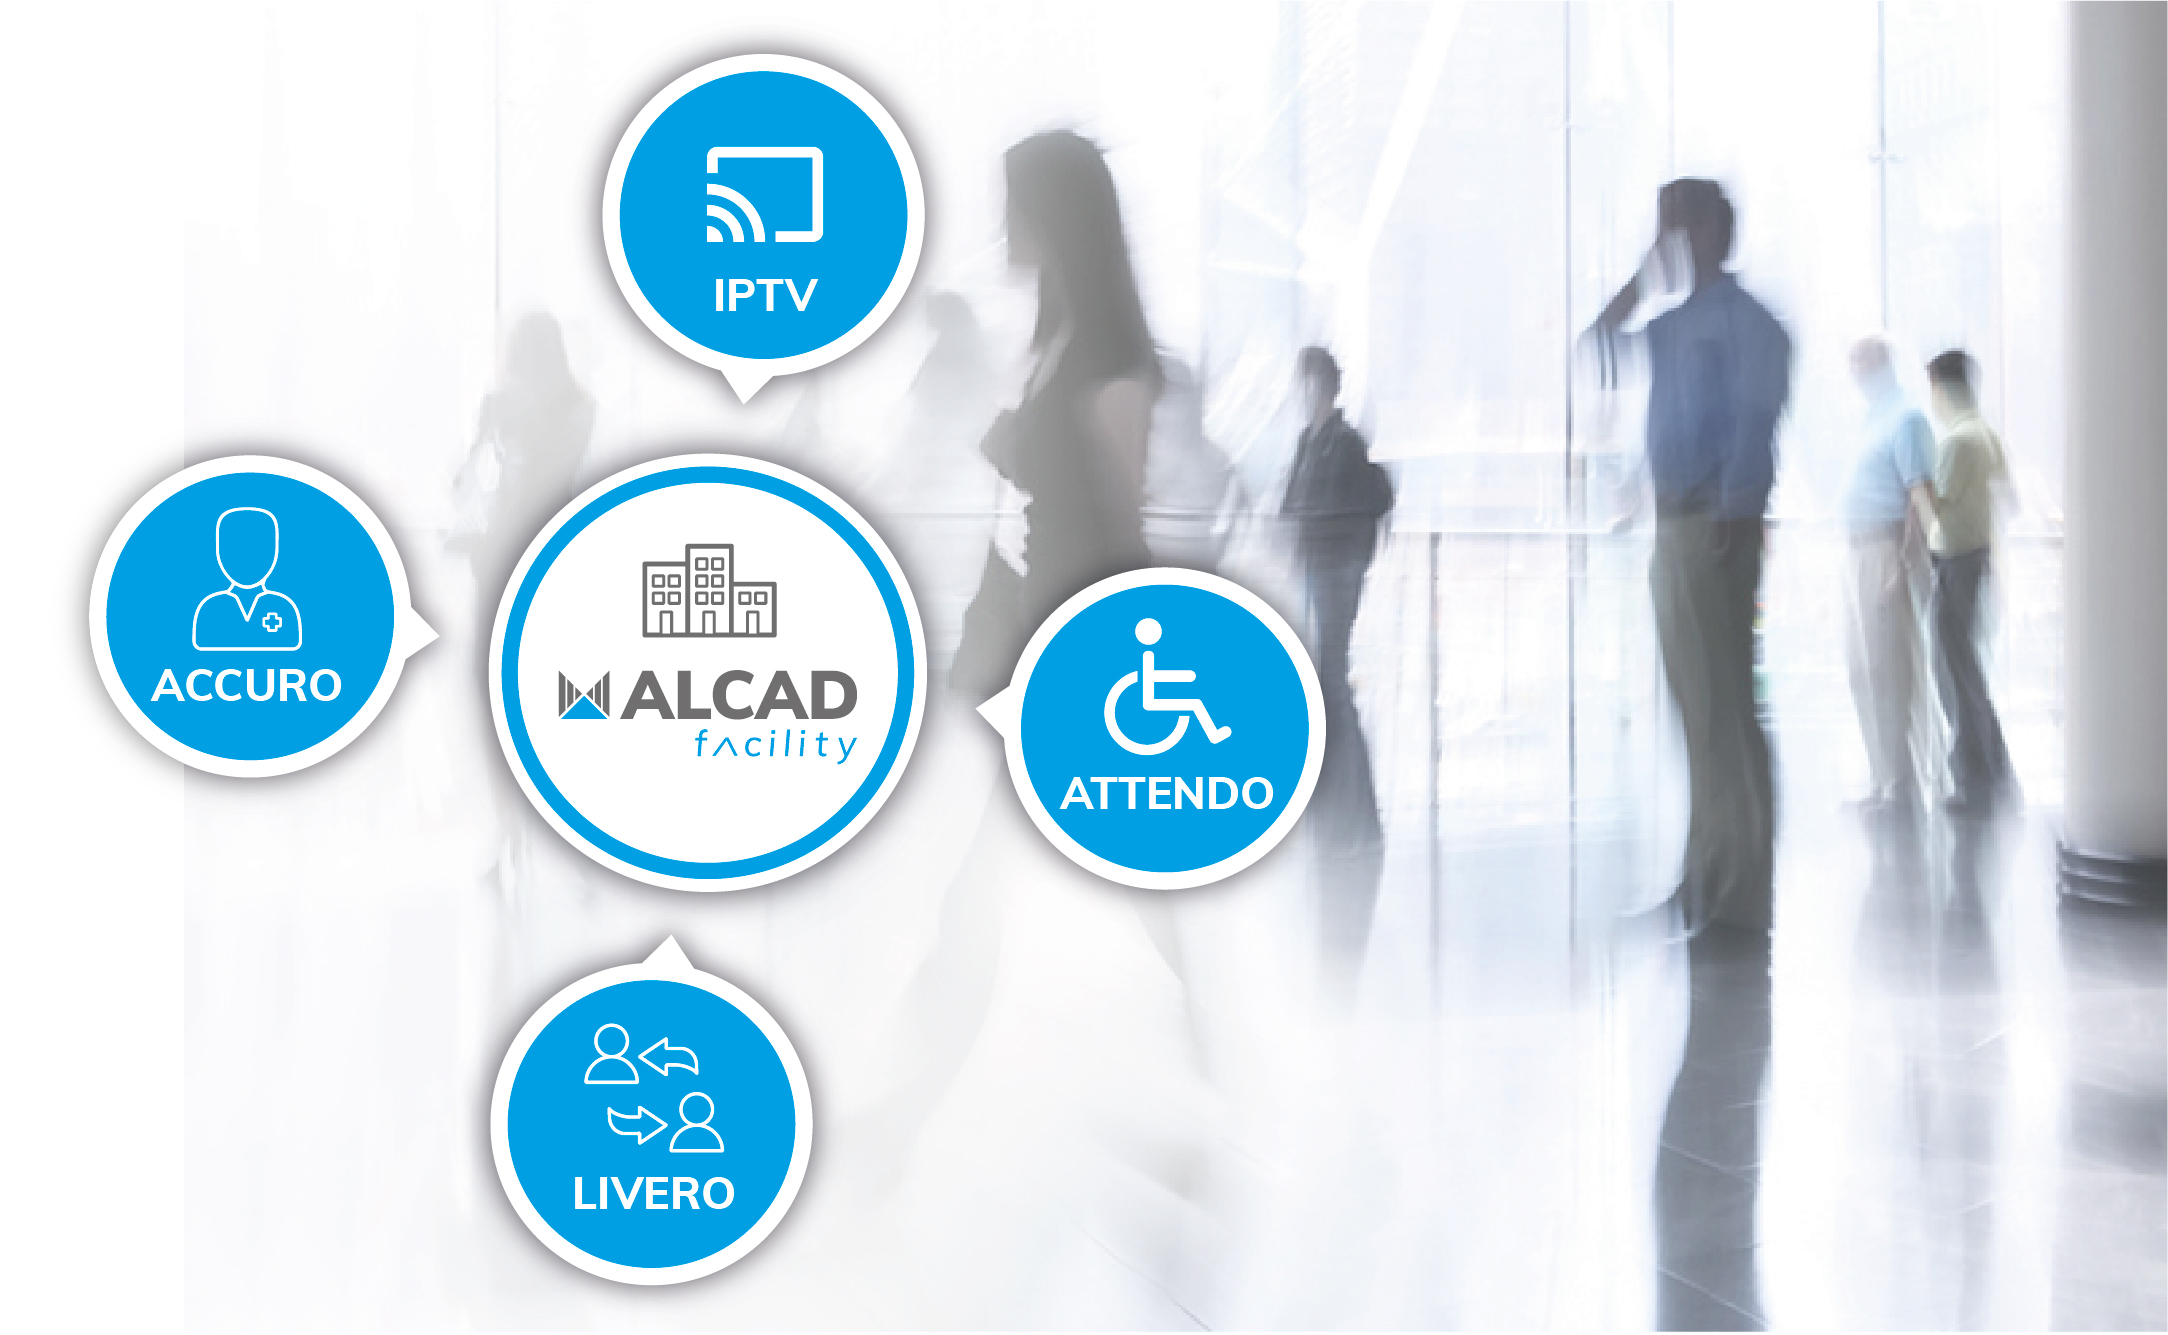 ALCAD Facility: soluciones de telecomunicaciones, seguridad y multimedia para hospitales, hoteles, residencias, centros comerciales, edificios públicos, etc.